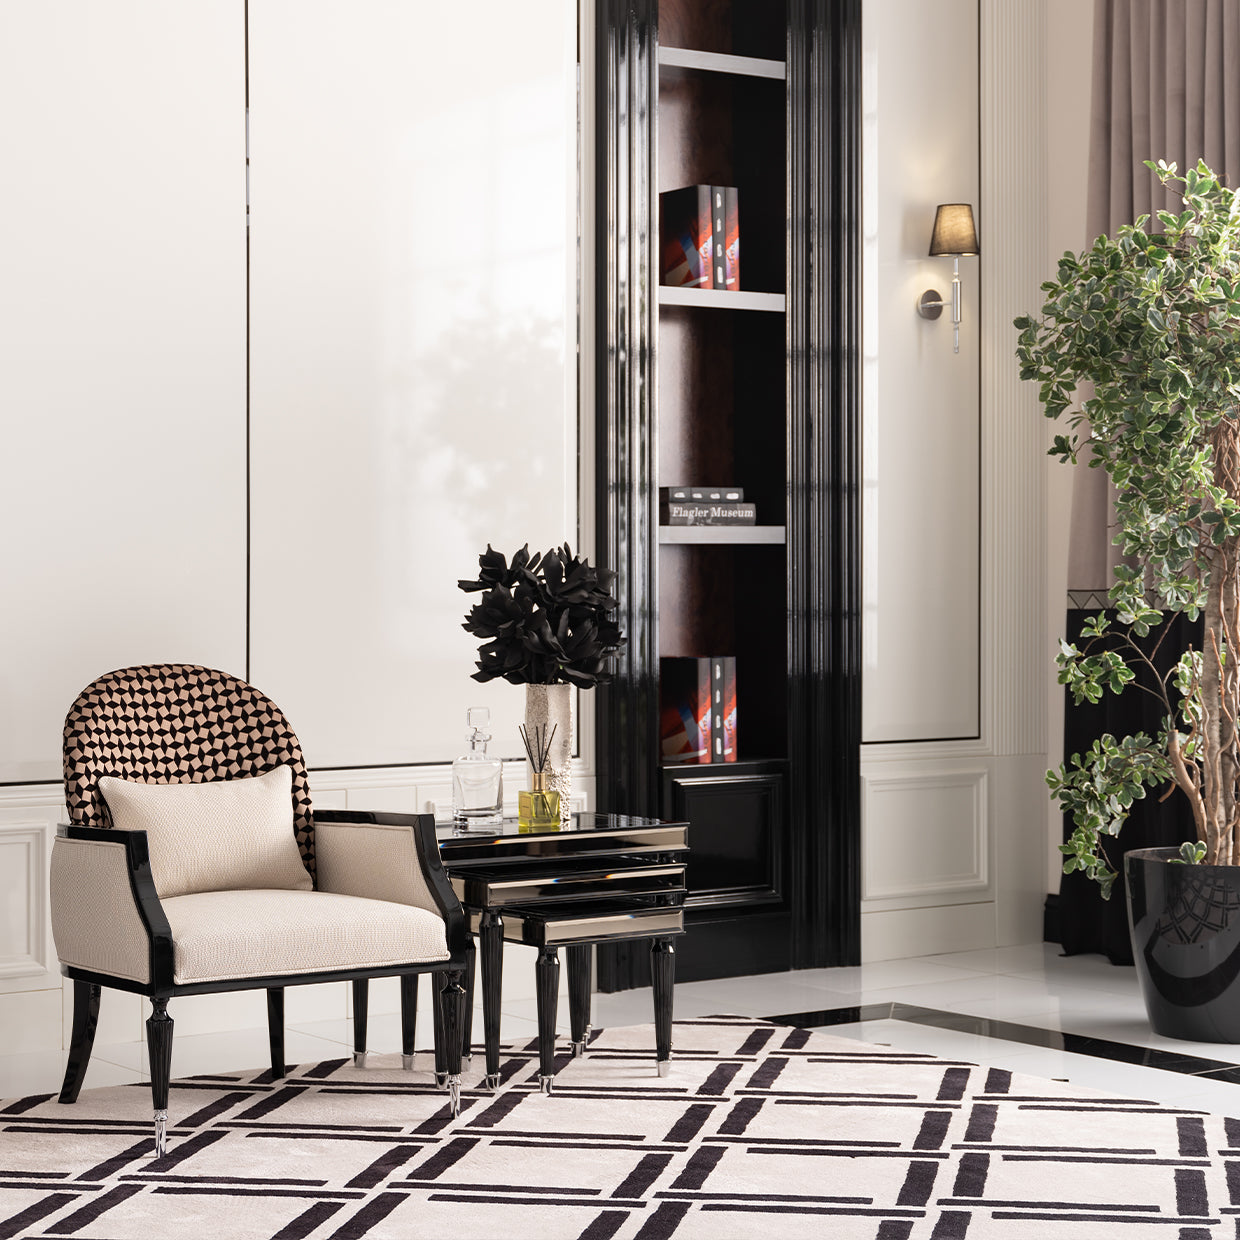 Accent Chair,Cafe Black,  L'art de vivre, Sophistication, Exquisite piece, Home décor, Refinement, Elegance, Style, Interior design, Living space, dream art , Michael amini